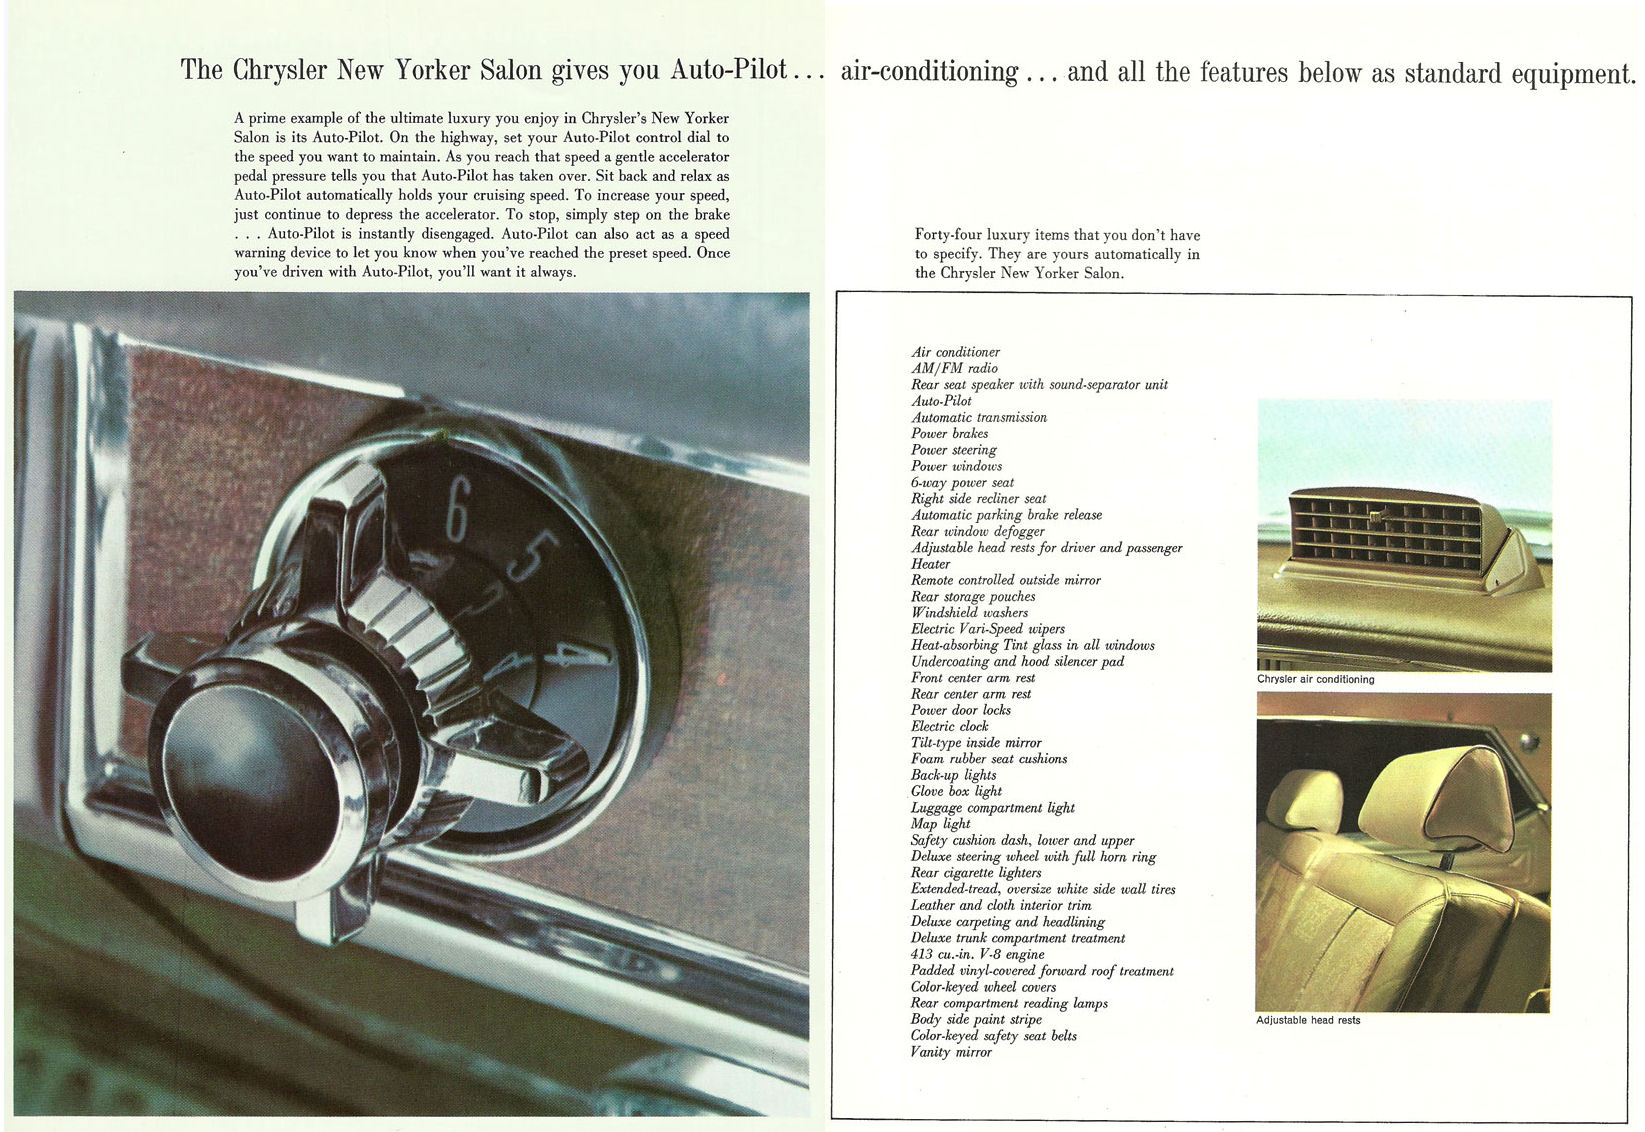 1963 Chrysler New Yorker Salon 4dr Hardtop-06-07